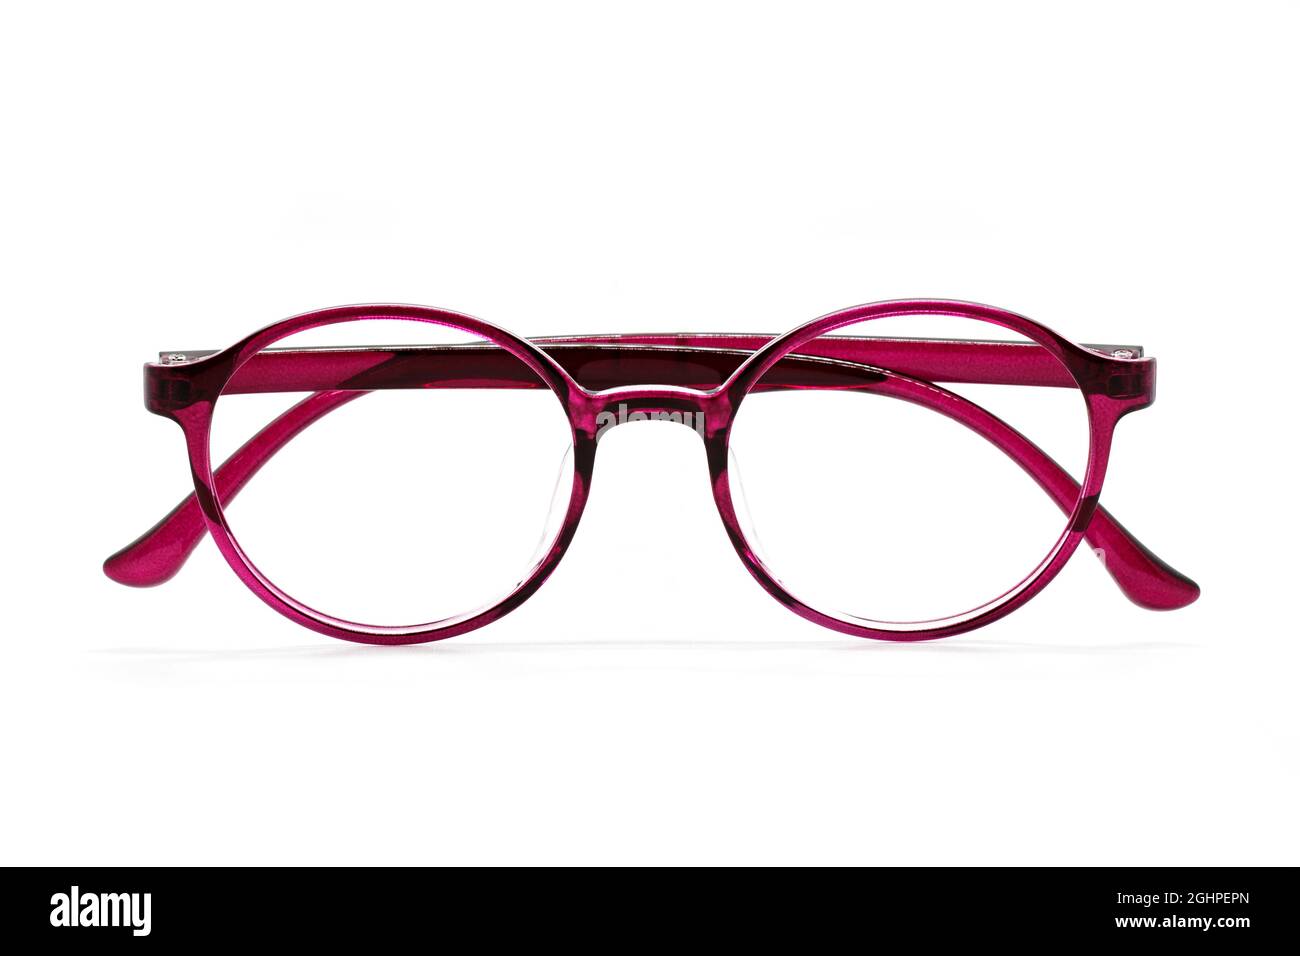 Image of modern fashionable spectacles isolated on white background,  Eyewear, Glasses Stock Photo - Alamy